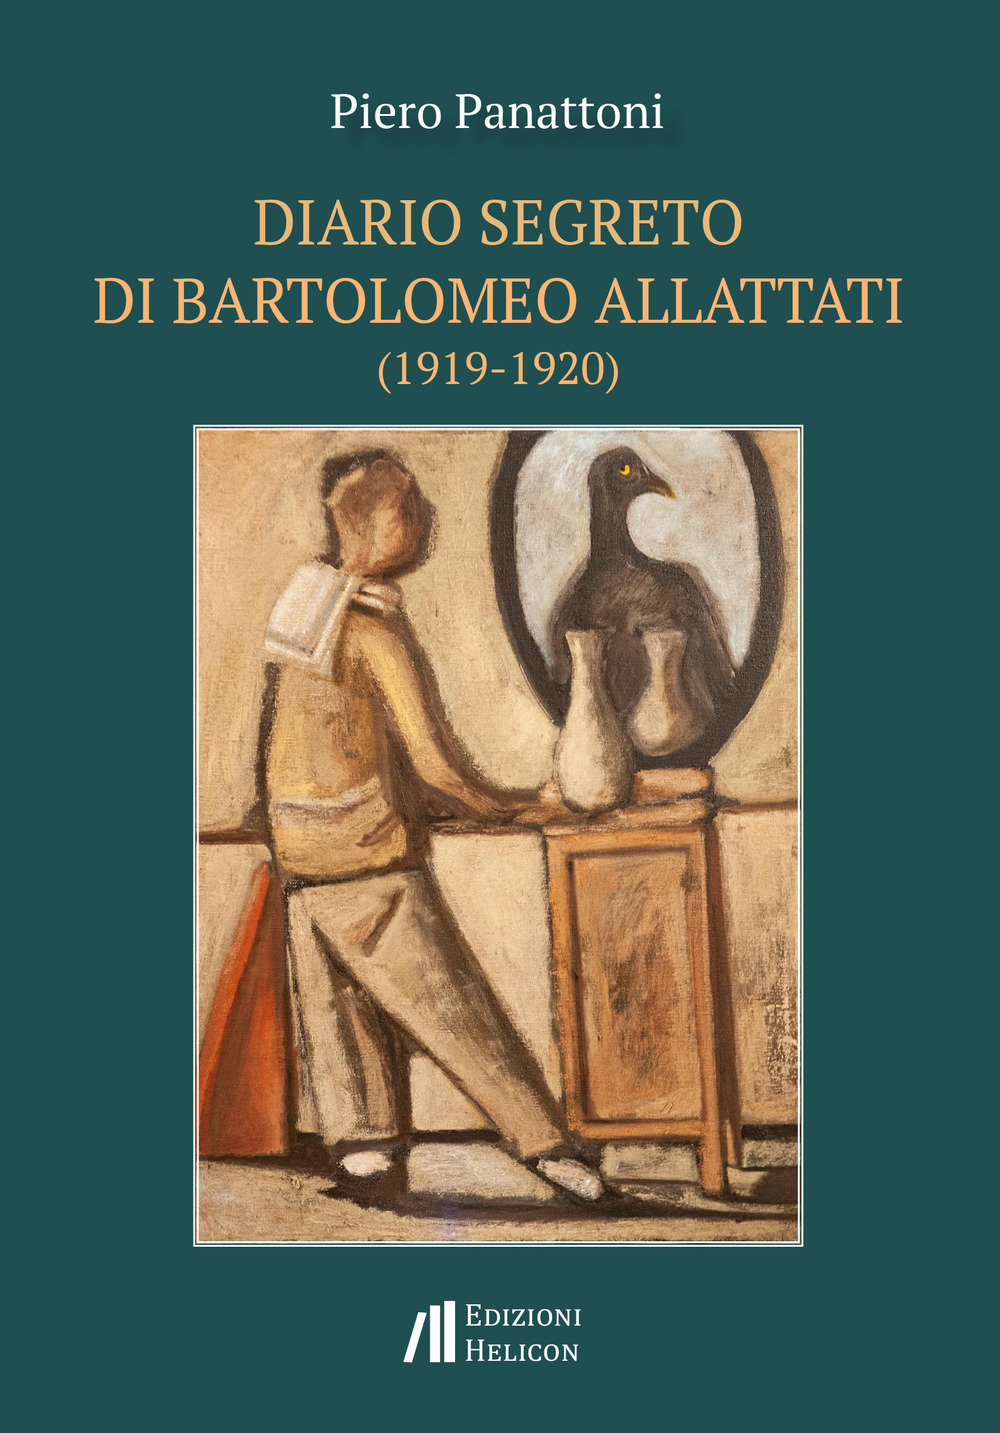 Image of Diario segreto di Bartolomeo Allattati (1919-1920)